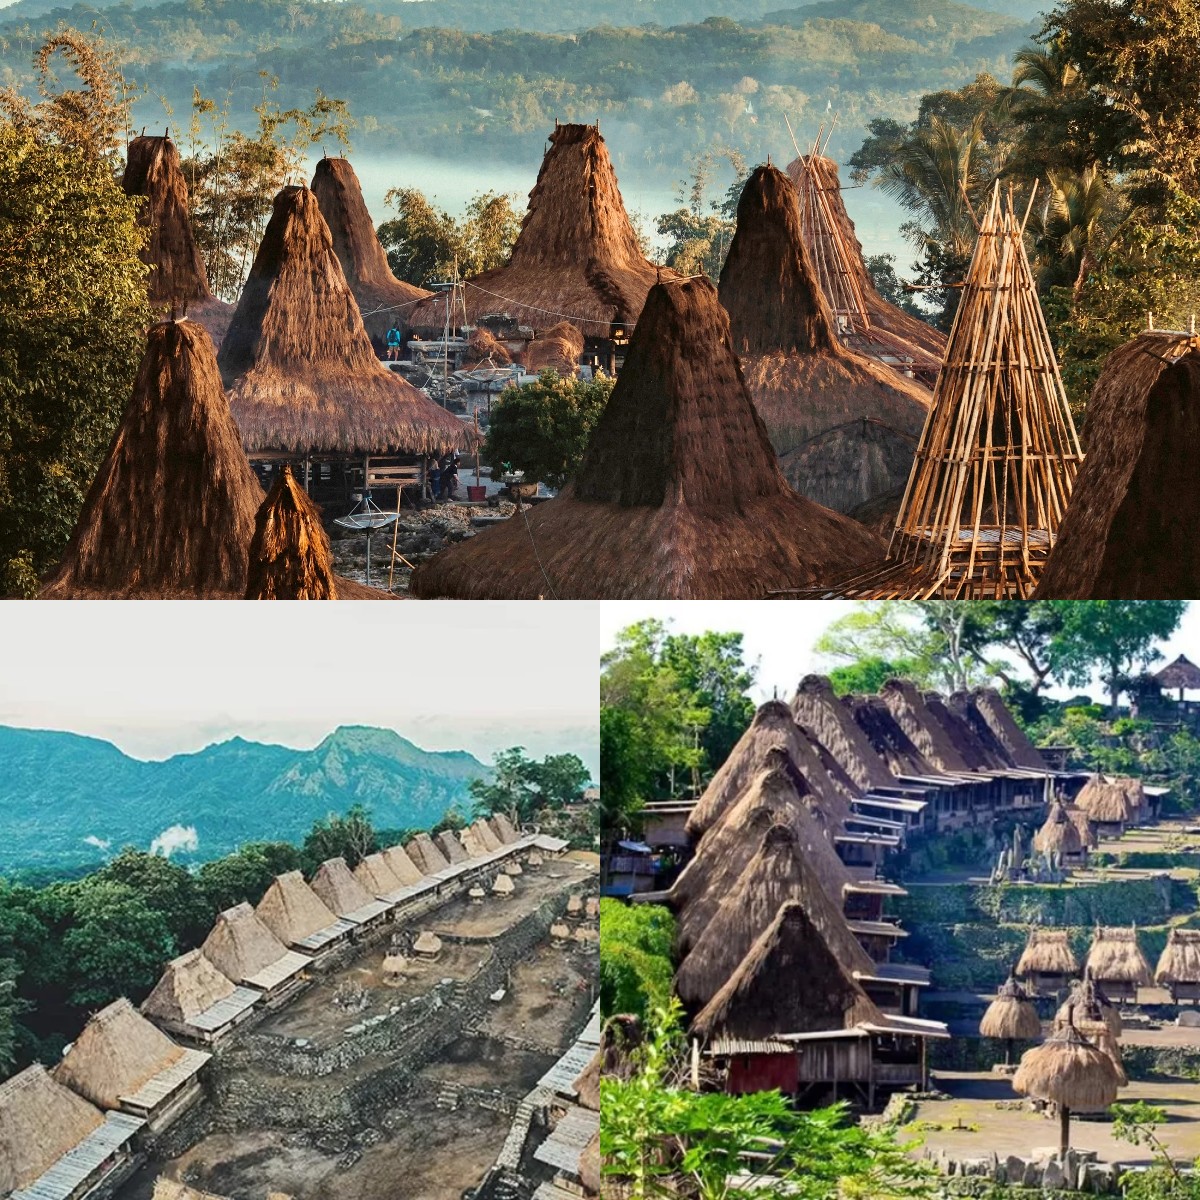 Sangat Mengagumkan, Desa Megalitikum di Indonesia Sangat Dikenal Mancanegara